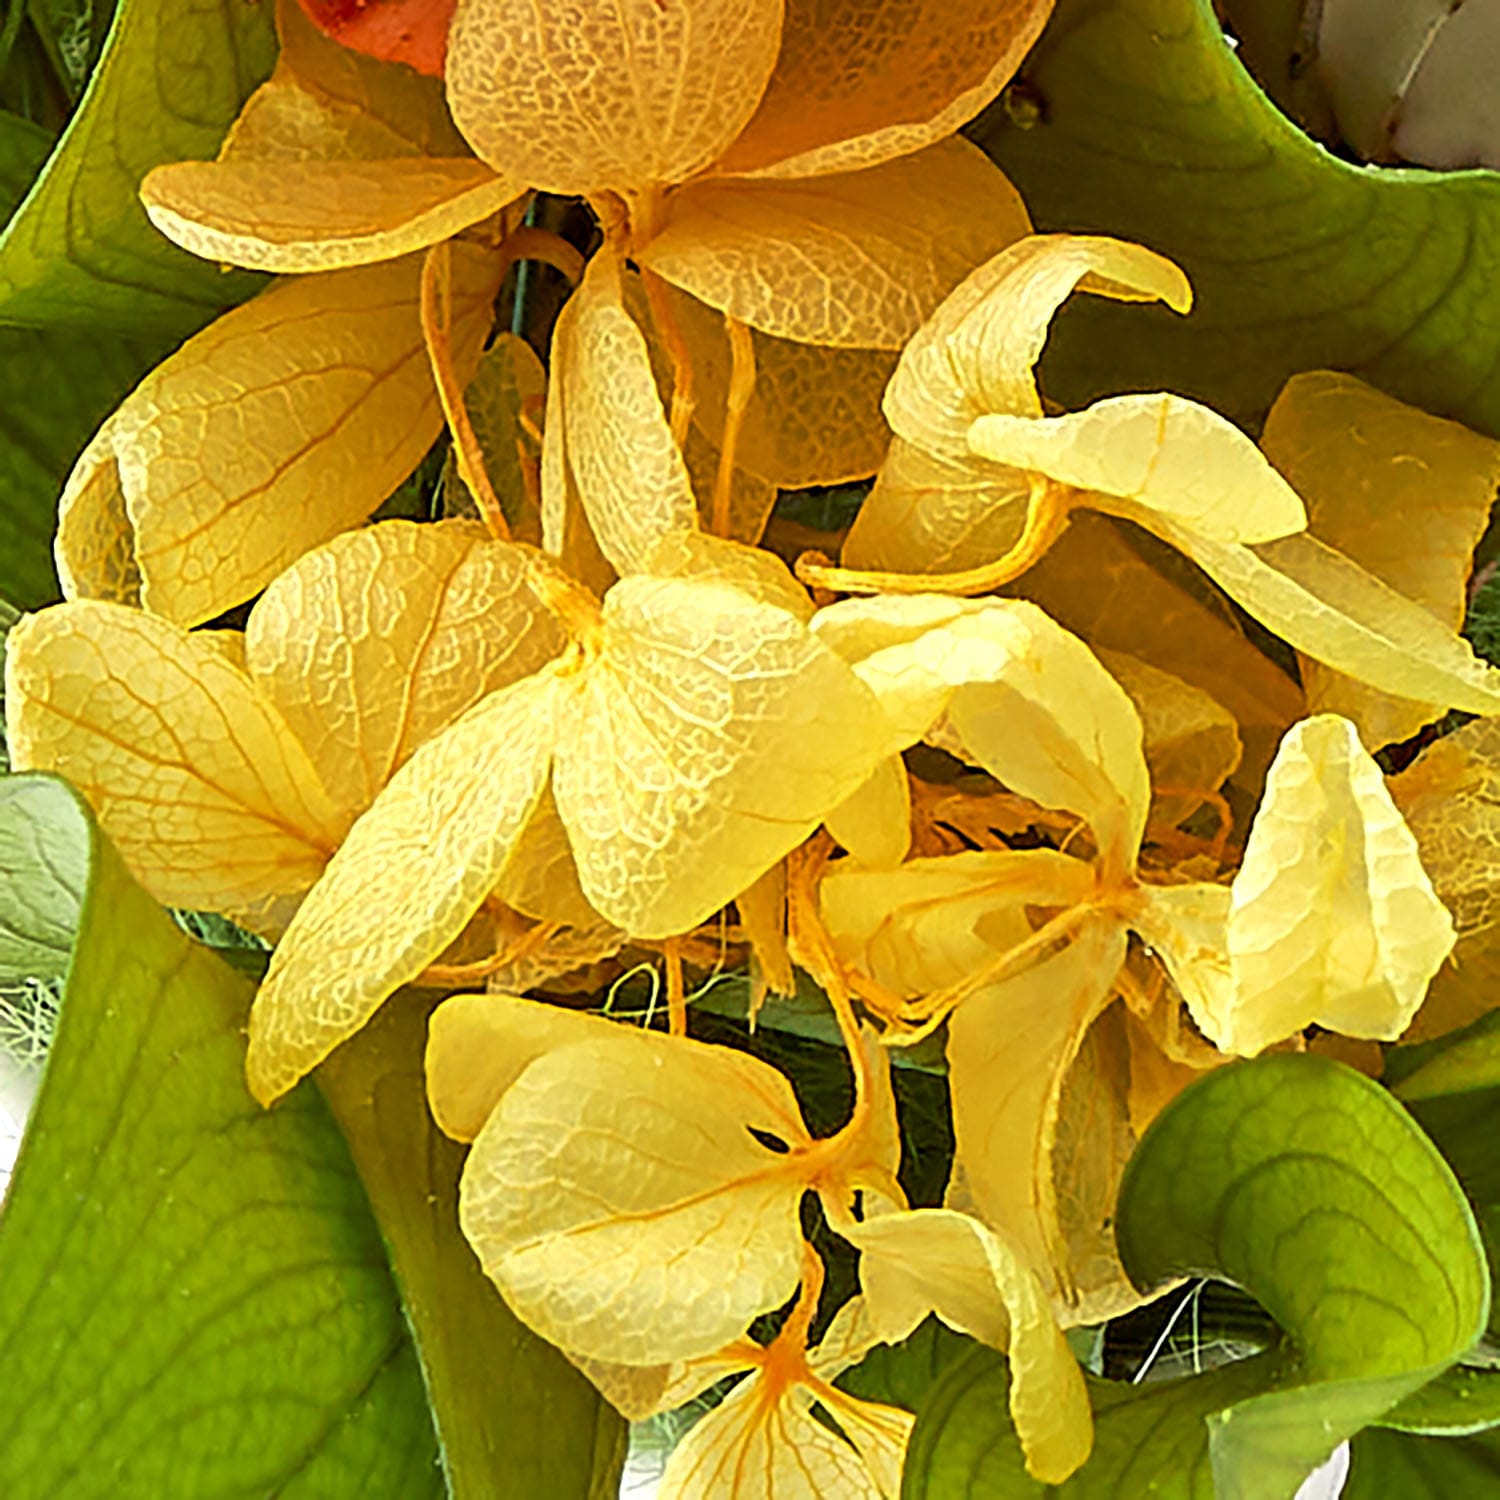 日比谷花壇 プリザーブドフラワーお供え用仏花